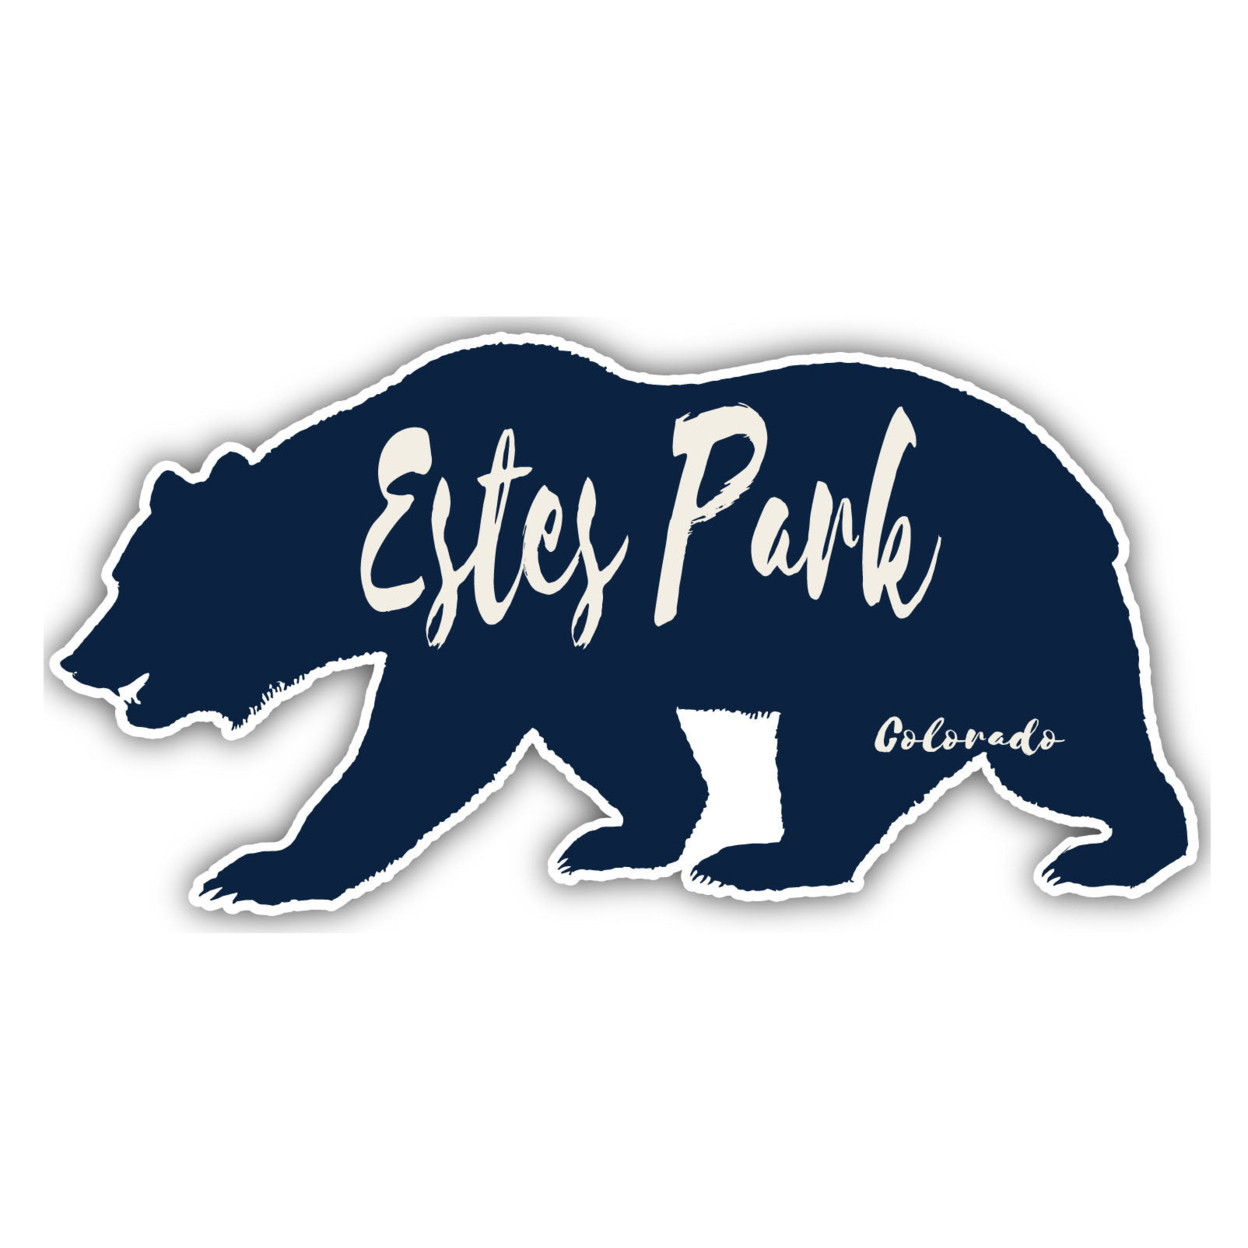 Estes Park Colorado Souvenir Decorative Stickers (Choose Theme And Size) - Single Unit, 6-Inch, Adventures Awaits